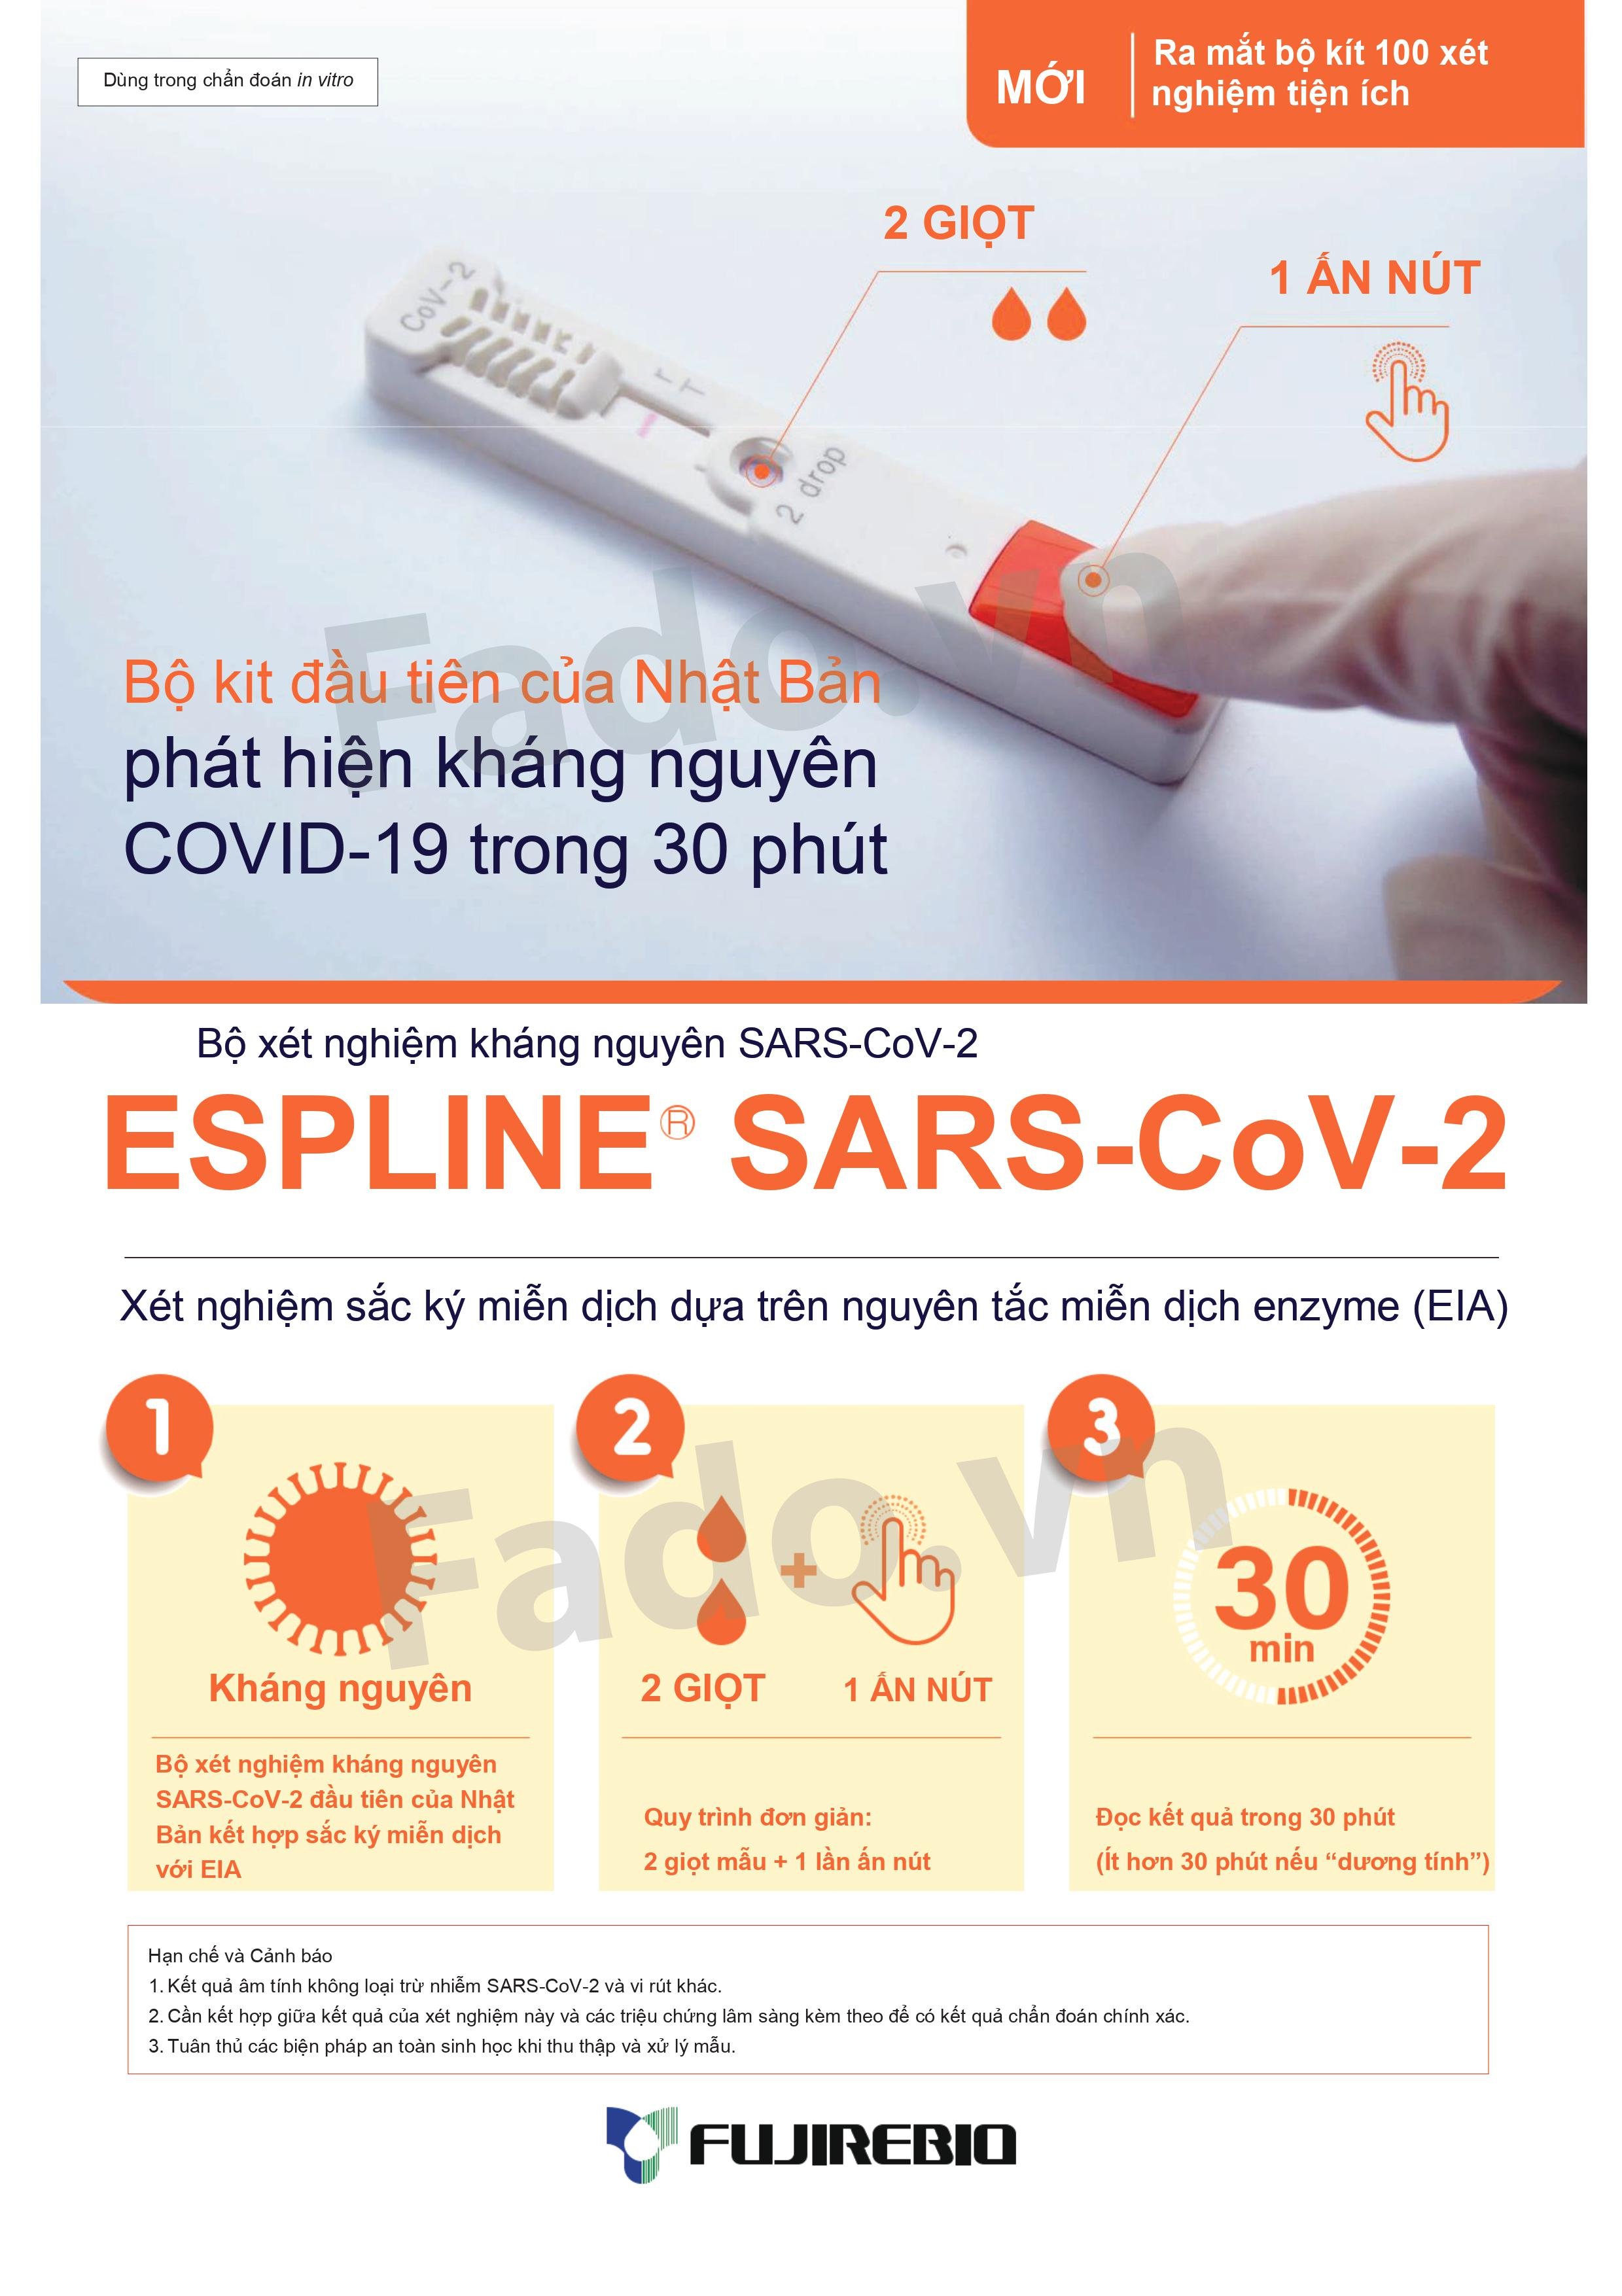 HÀNG CÓ SẴN - Combo 90 - Kit xét nghiệm kháng nguyên ESPLINE SARS-CoV-2 - Dựa trên nguyên tắc miễn dịch enzyme (EIA)